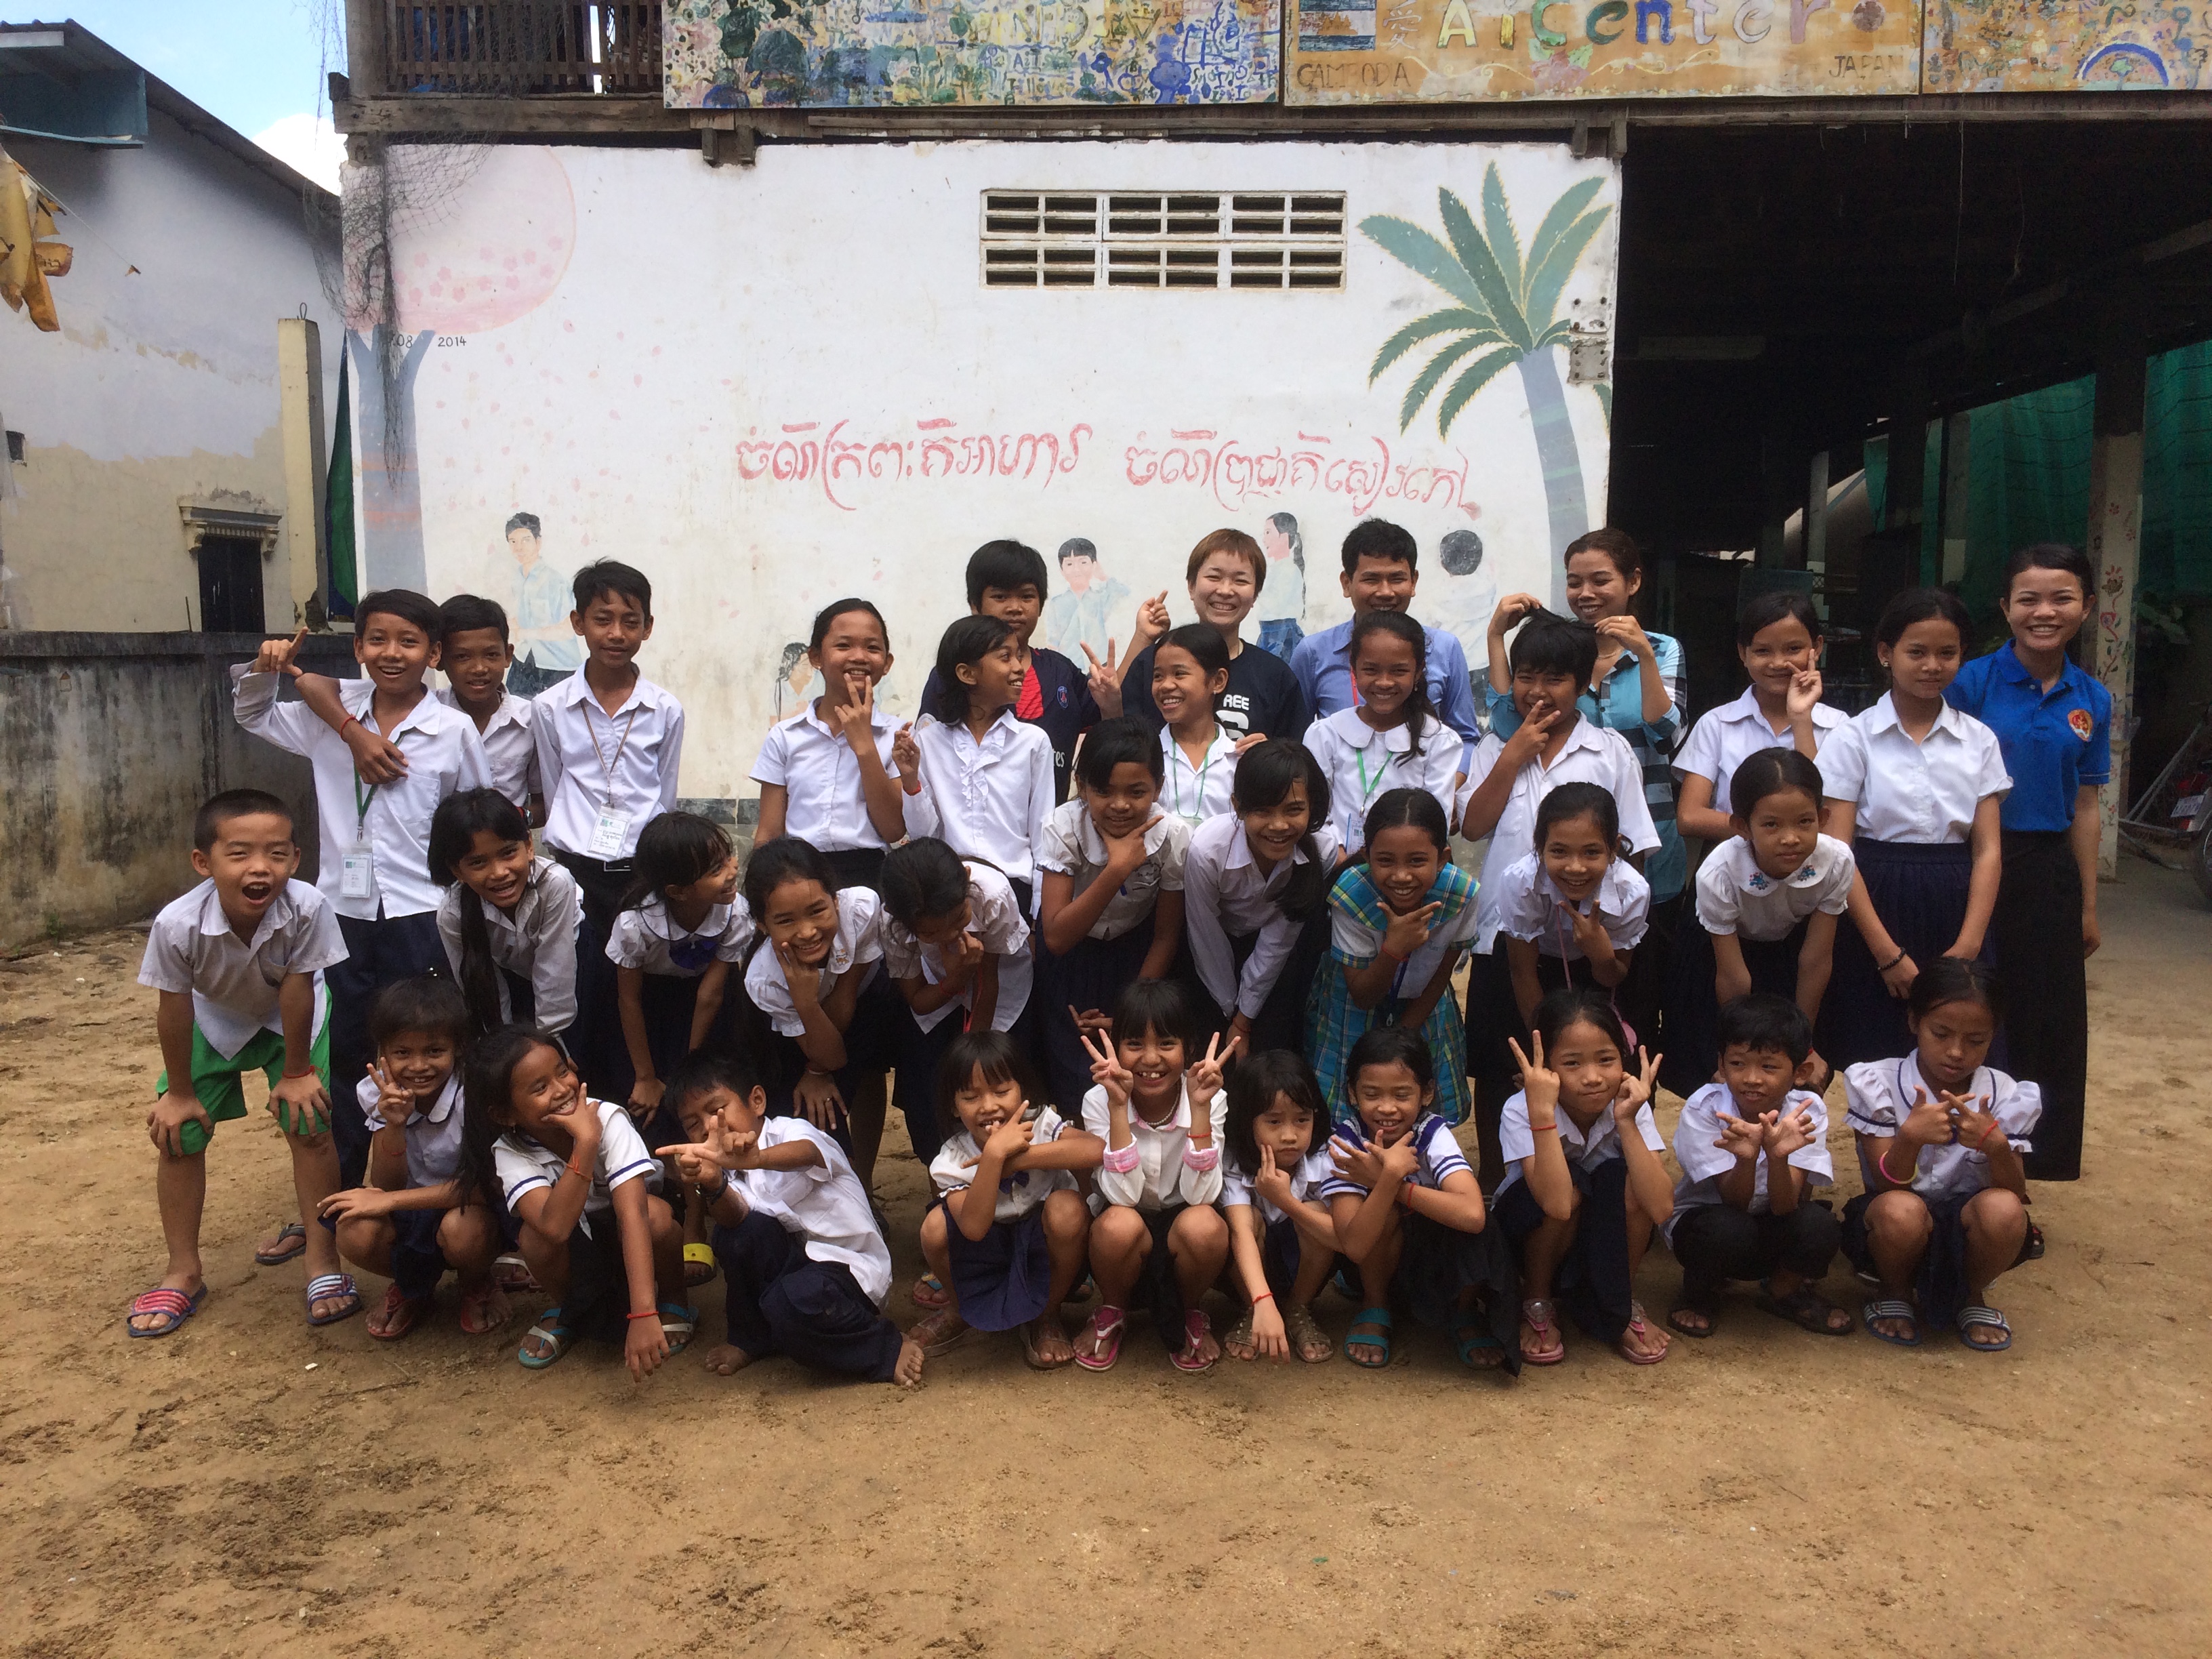 カンボジアで子供たちと遊ぶ。愛センターボランティア記。Vol.4